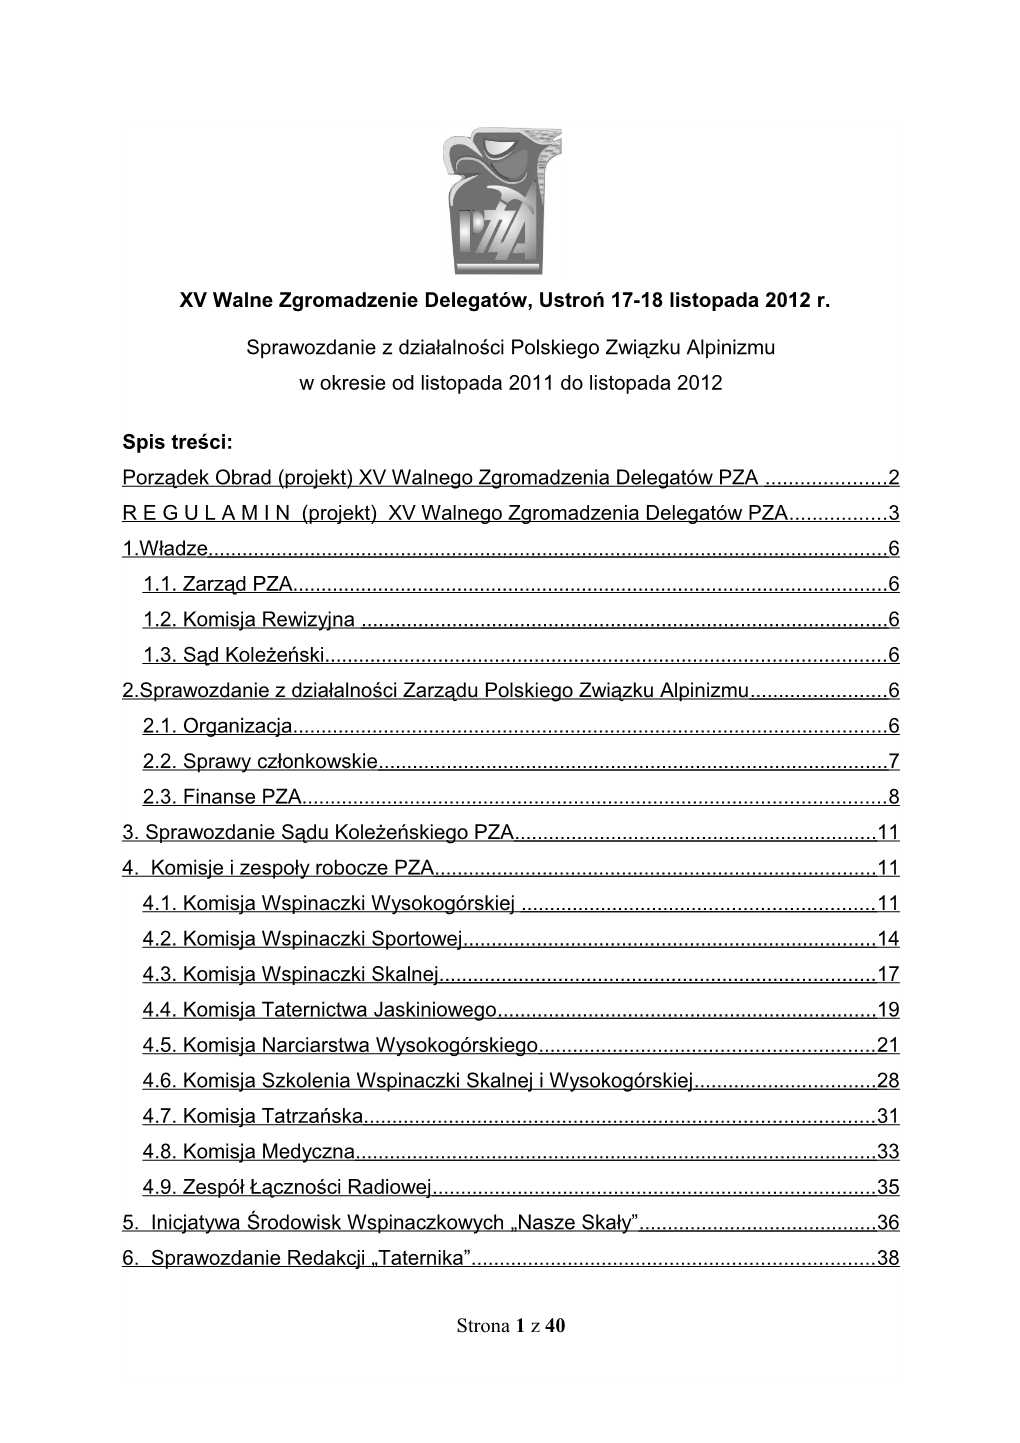 Sprawozdanie Z Działalności Związku W Latach 2010-2011